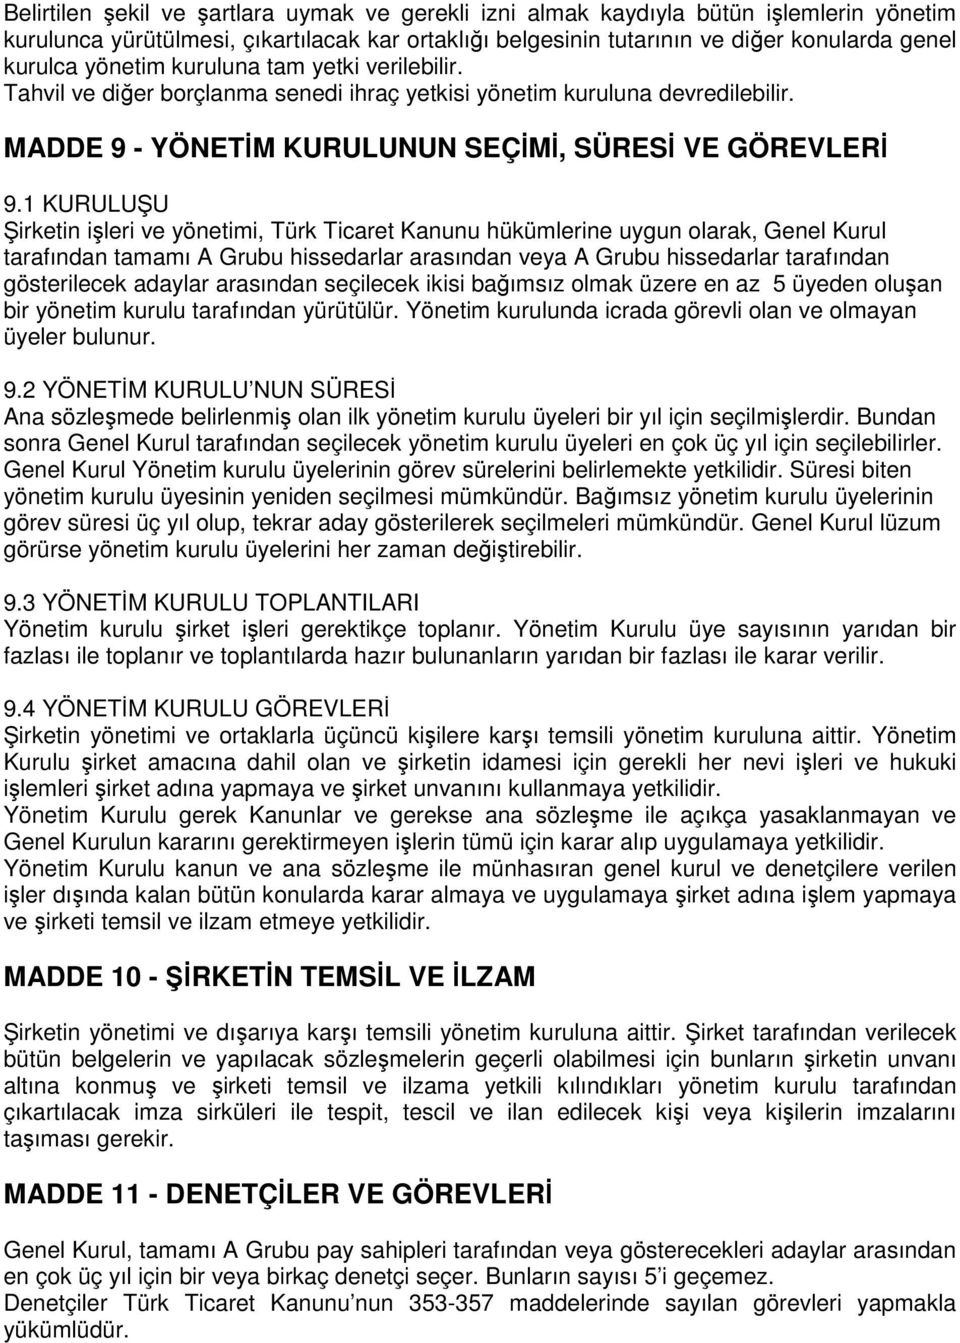 1 KURULUŞU Şirketin işleri ve yönetimi, Türk Ticaret Kanunu hükümlerine uygun olarak, Genel Kurul tarafından tamamı A Grubu hissedarlar arasından veya A Grubu hissedarlar tarafından gösterilecek